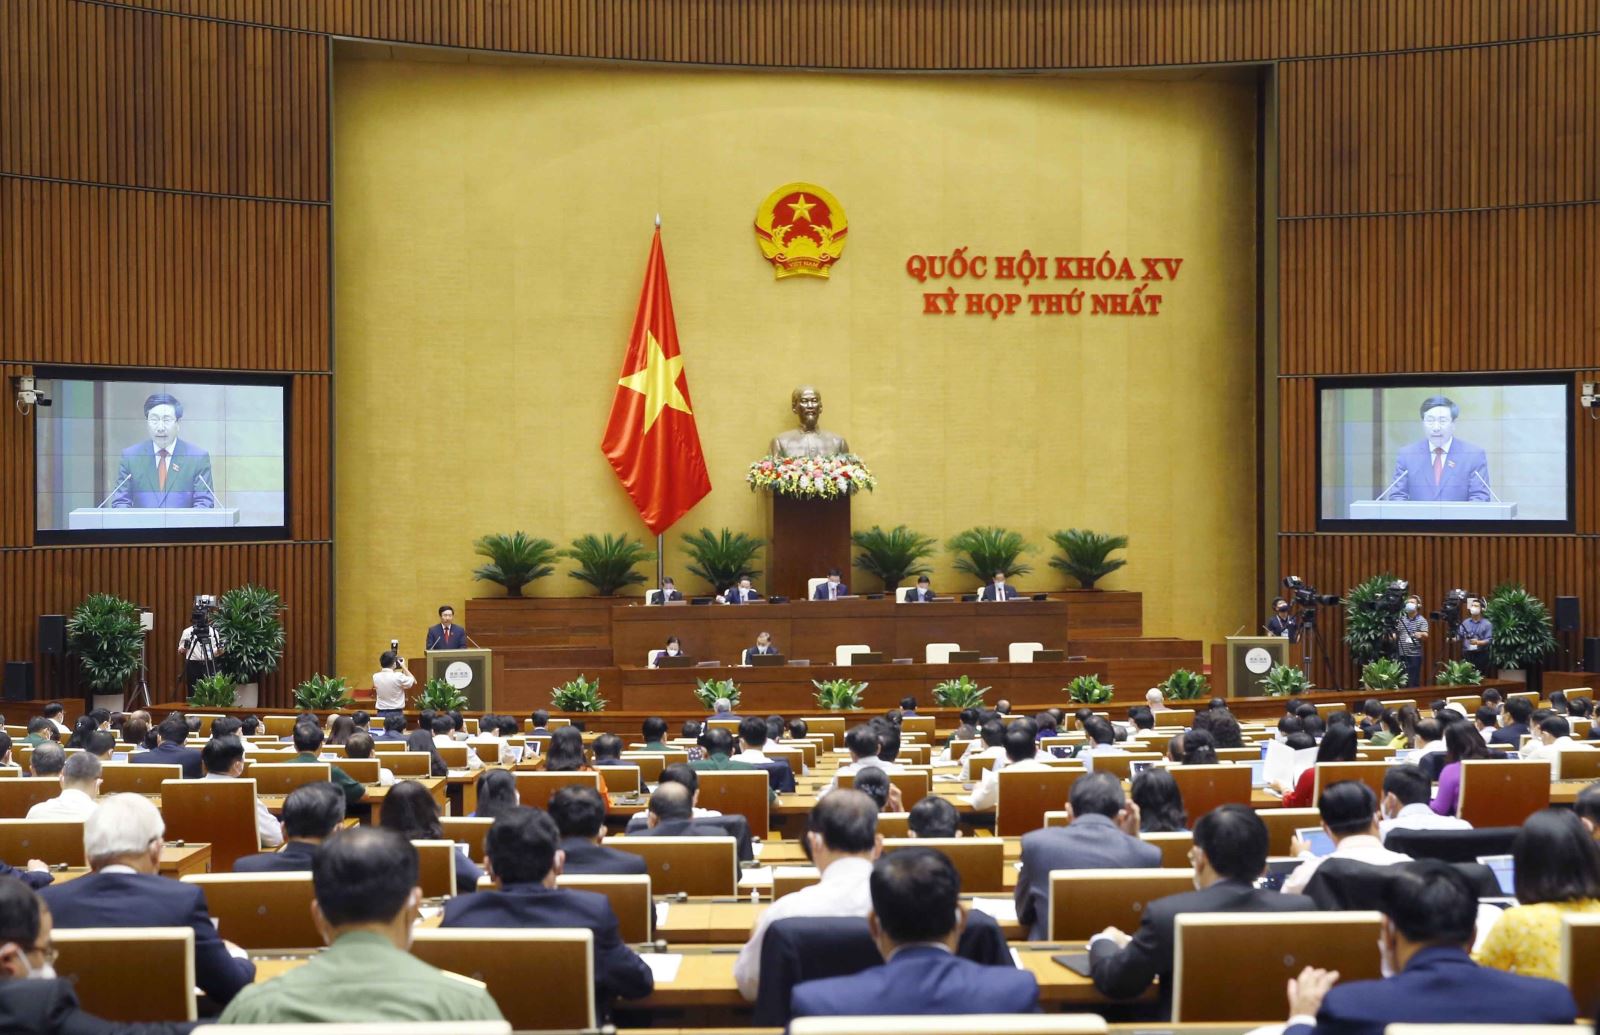 Phó Thủ tướng Chính phủ nhiệm kỳ 2016-2021 Phạm Bình Minh trình bày Báo cáo trước Quốc hội. Ảnh: Doãn Tấn/TTXVN